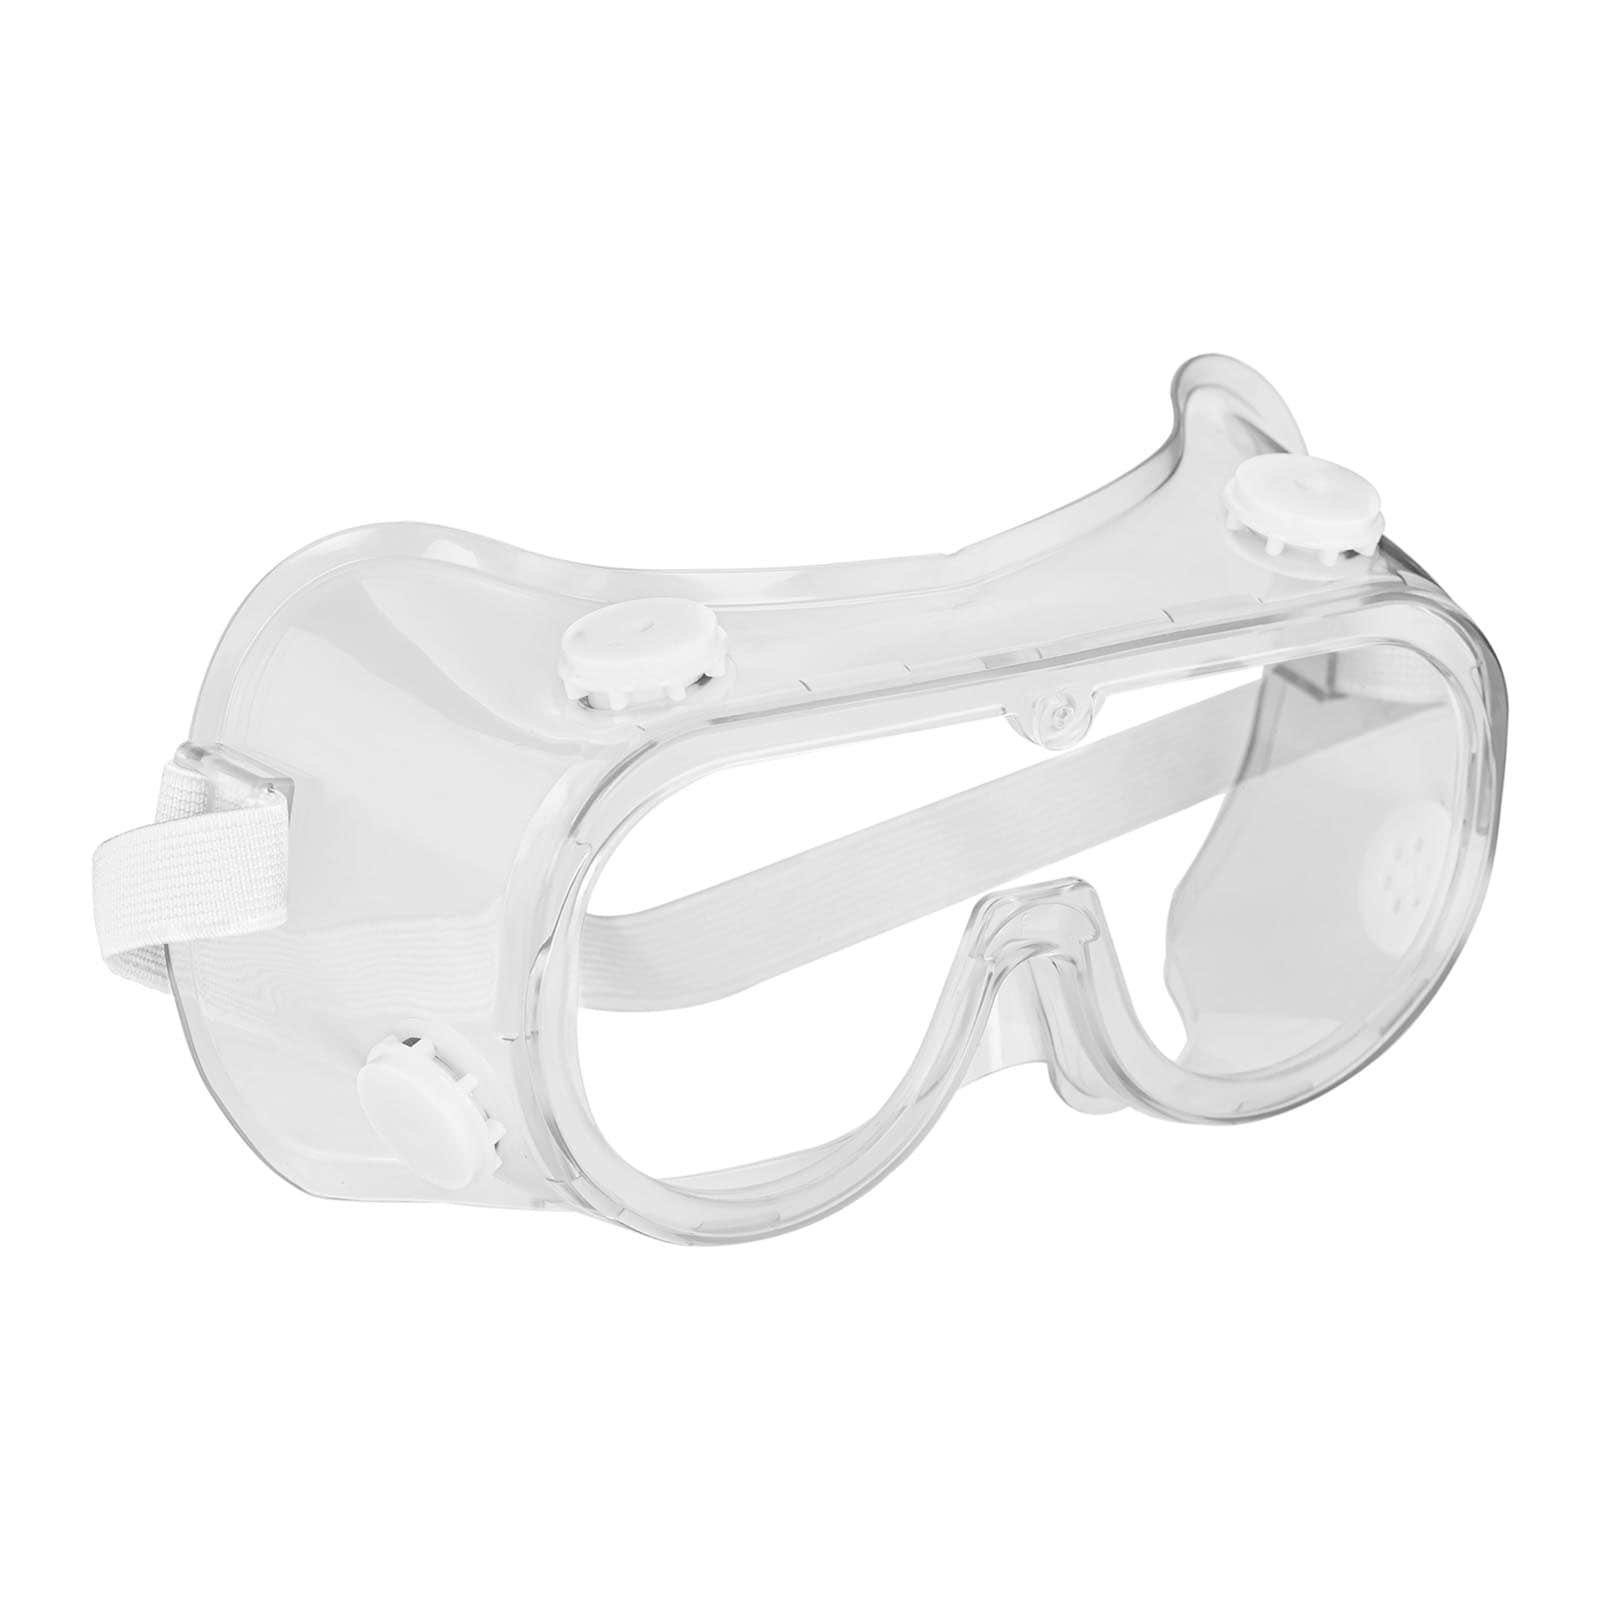 MSW Arbeitsschutzbrille 3x kratzfest Laborbrille beschlagfrei